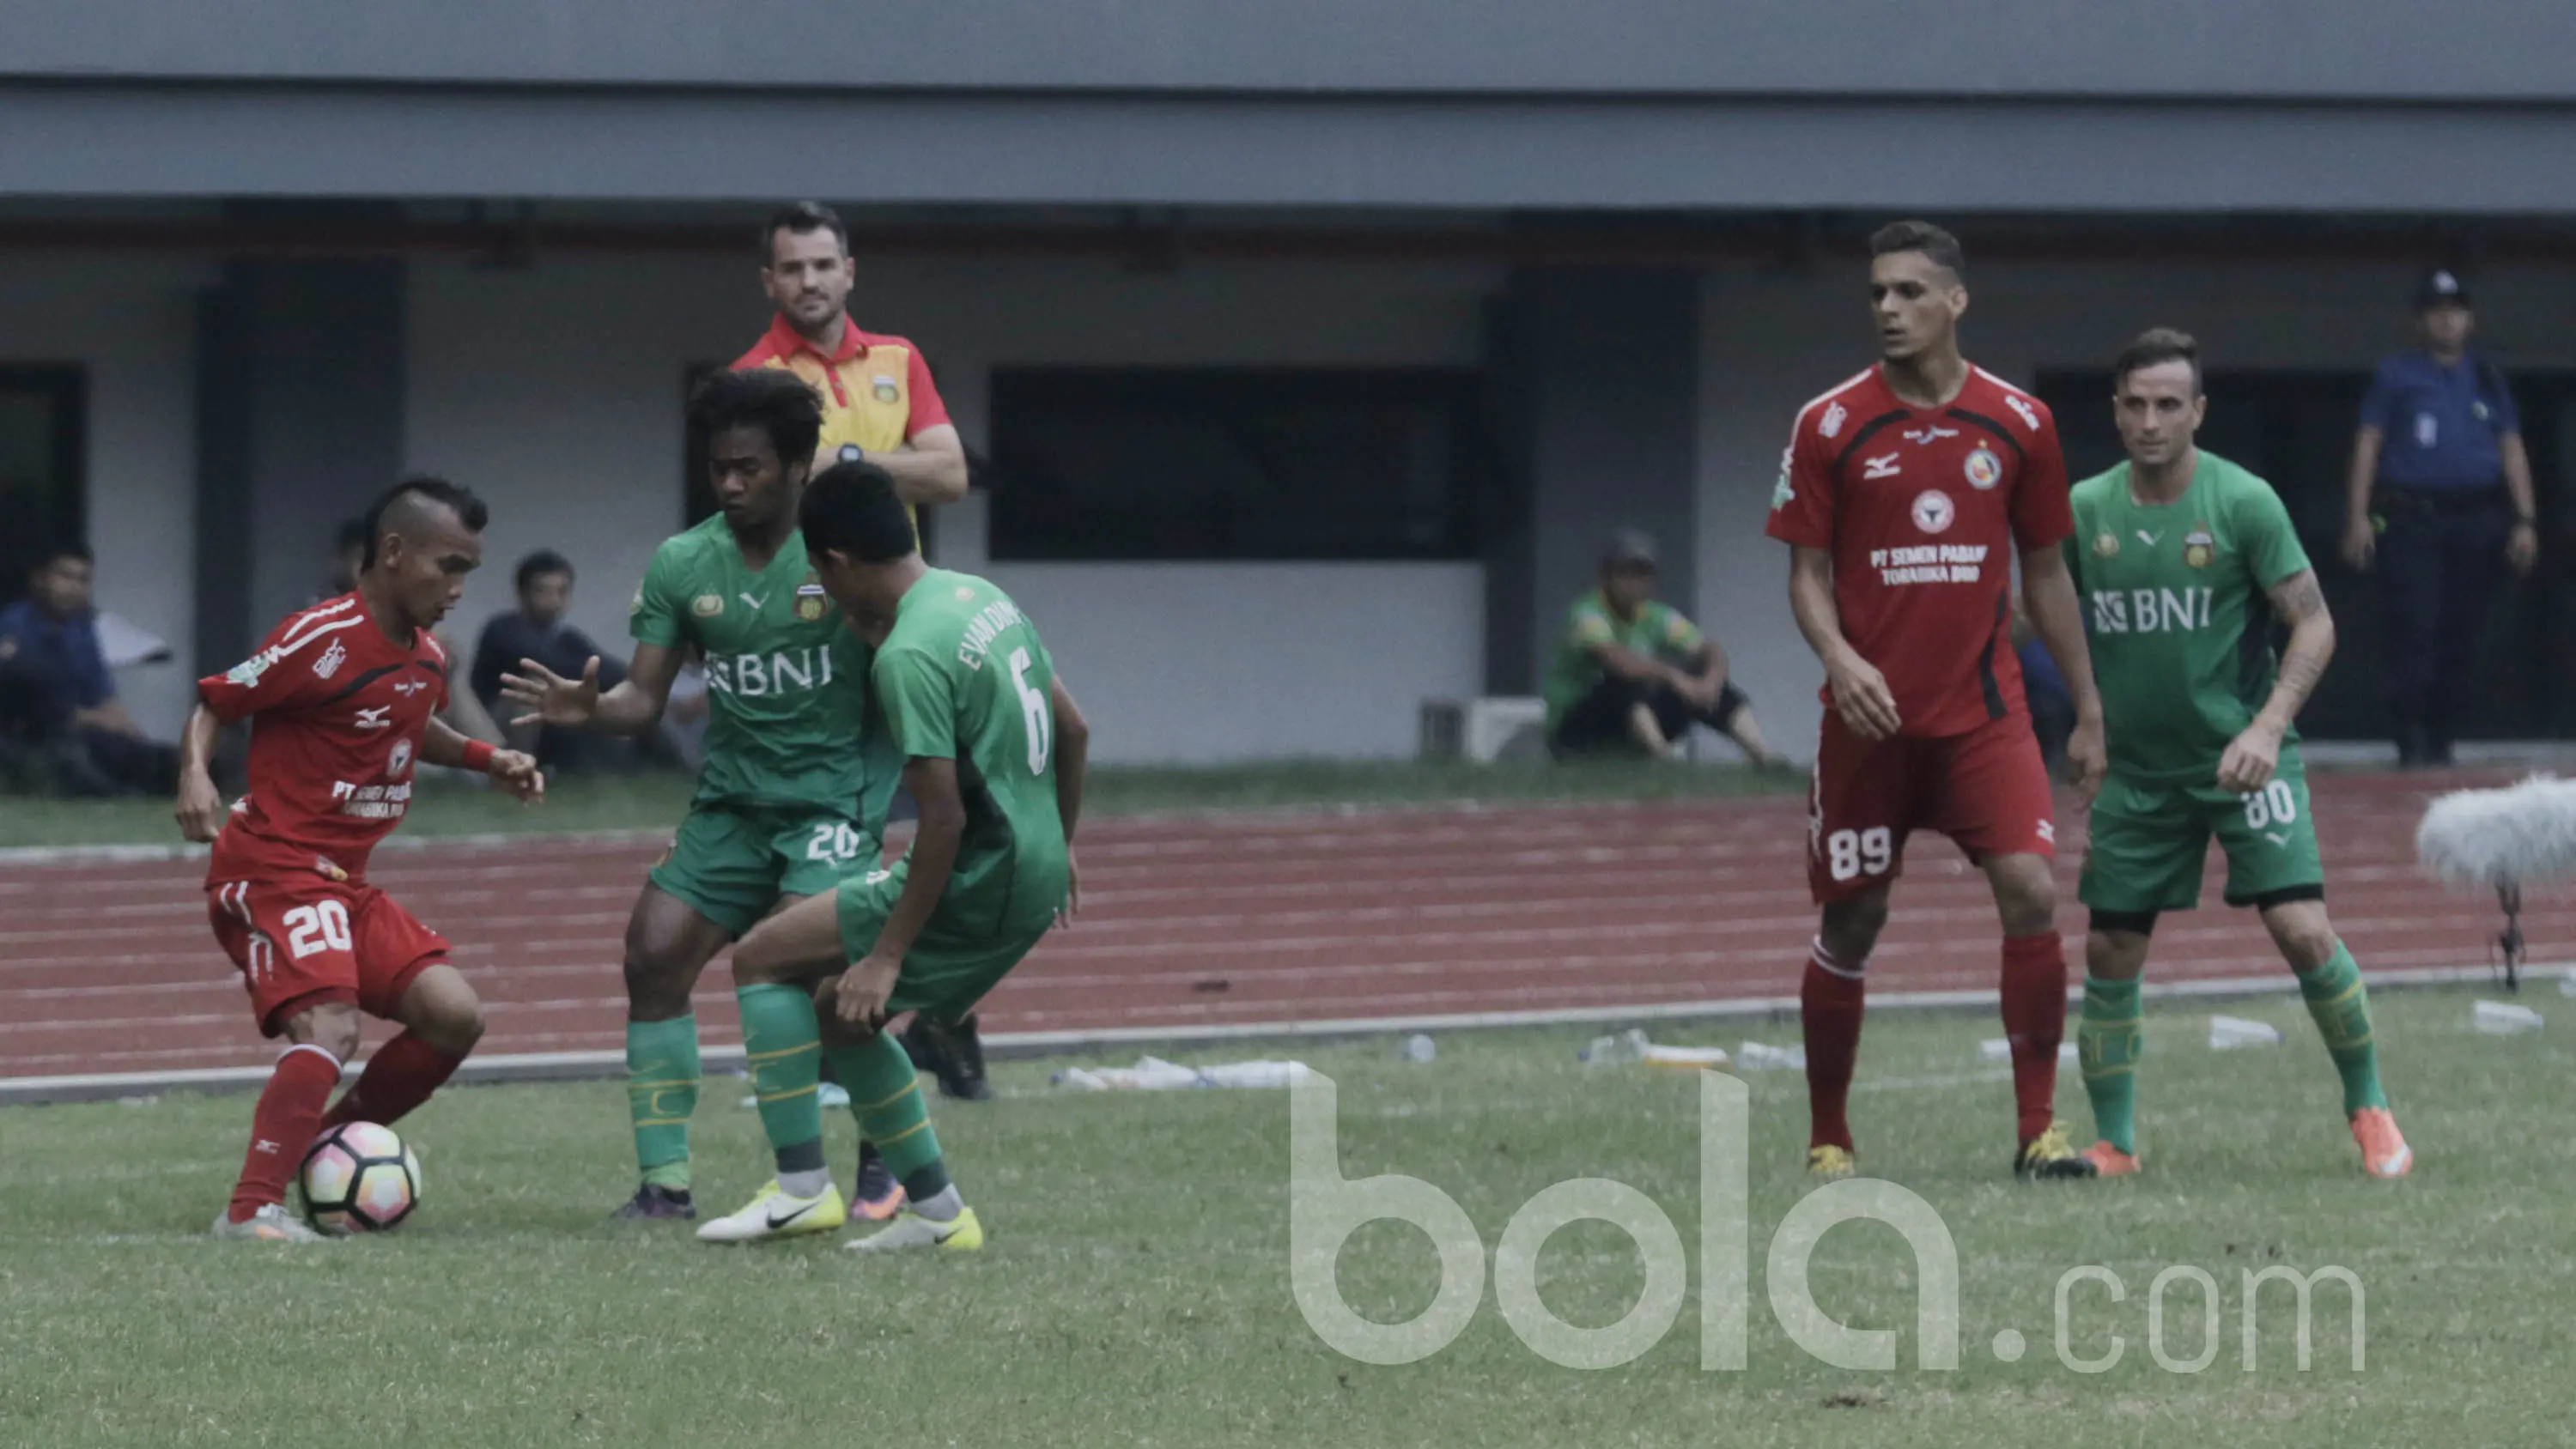 Pemain Semen Padang, Riko Simanjuntak, saat laga melawan Bhayangkara FC di Stadion Patriot, Bekasi, Sabtu (20/05/2017). Bhayangkara FC menang 1-0. (Bola.com/M Iqbal Ichsan)